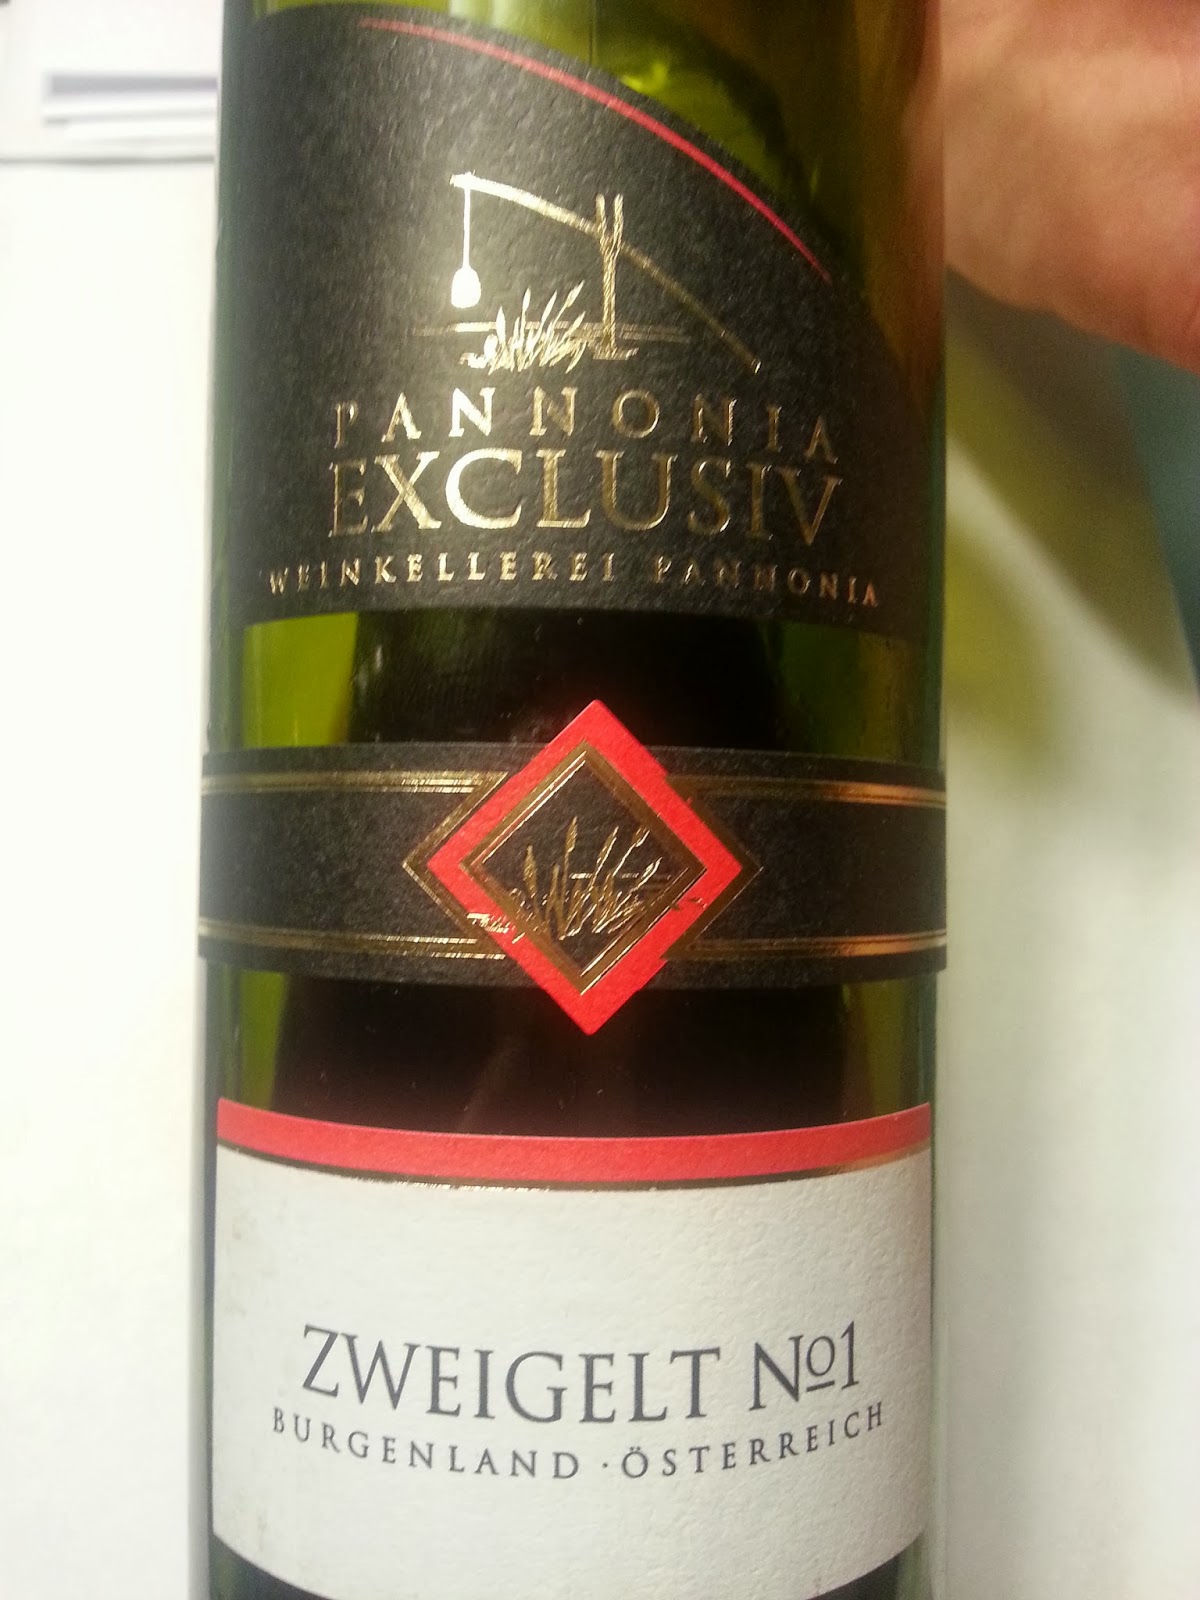 Exclusive Pannonia My Weinkellerei 2012 Zweigelt Wine: No.1